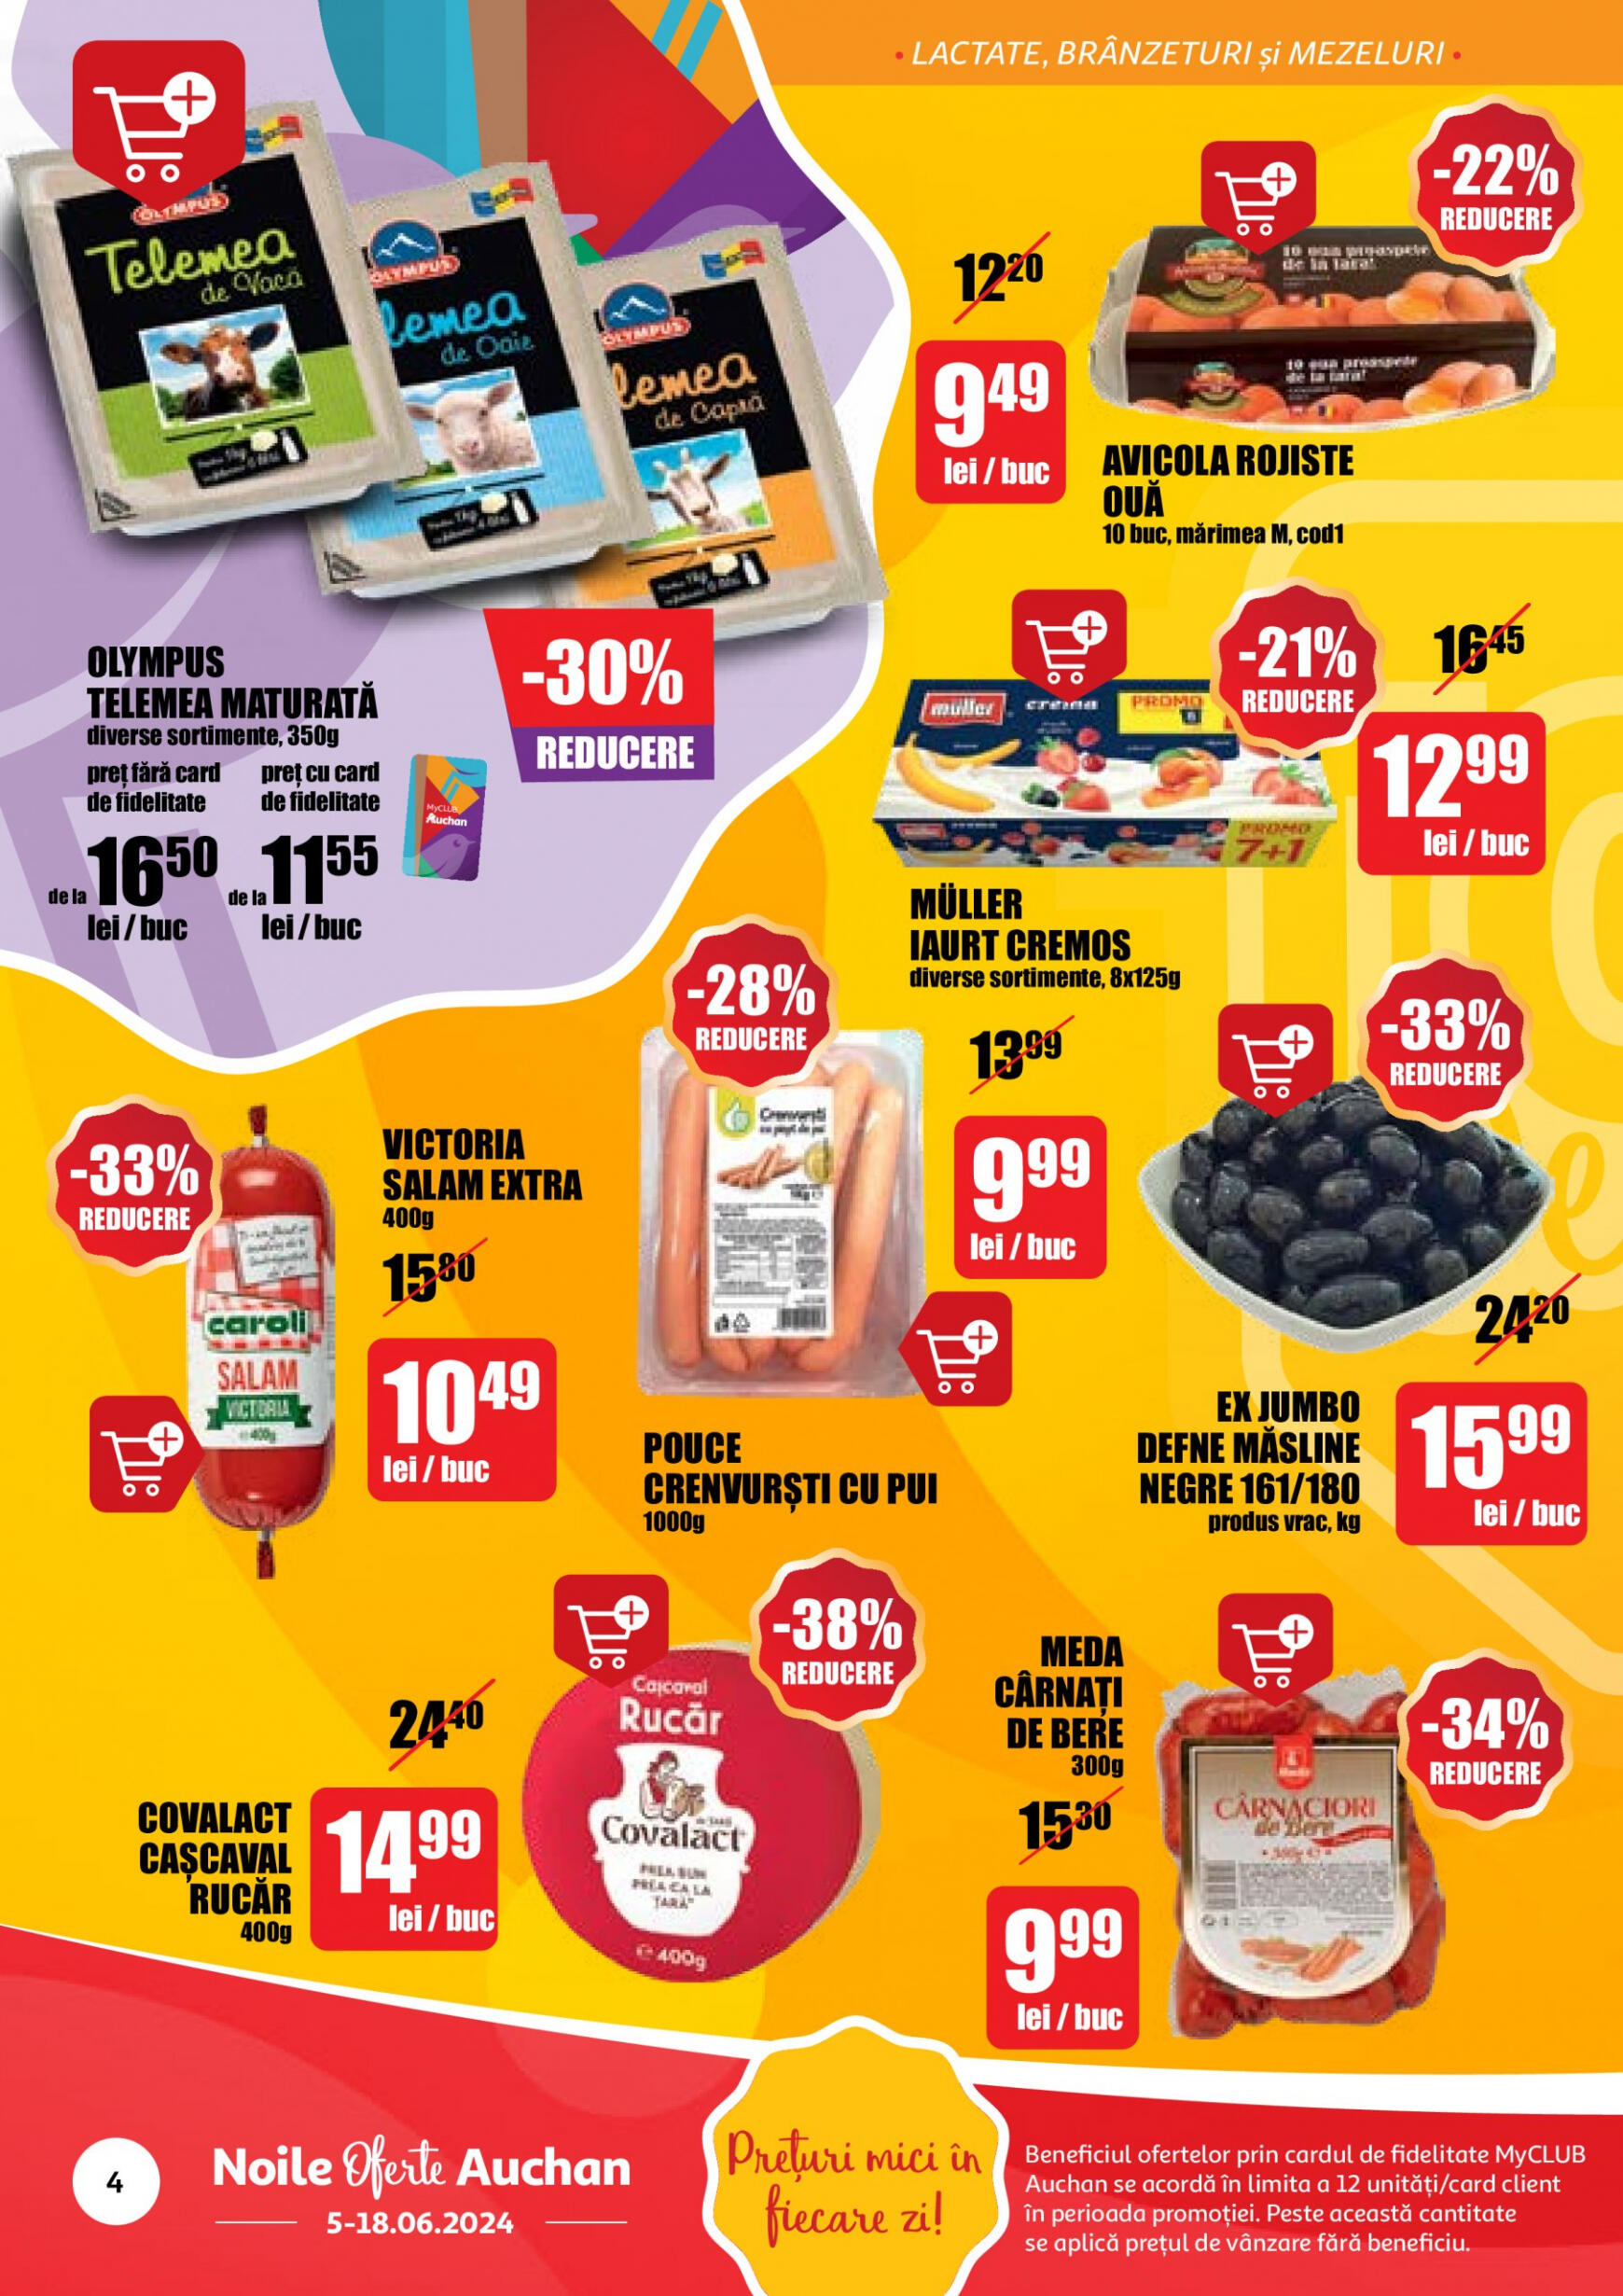 auchan - Catalog nou Auchan 05.06. - 18.06. - page: 4